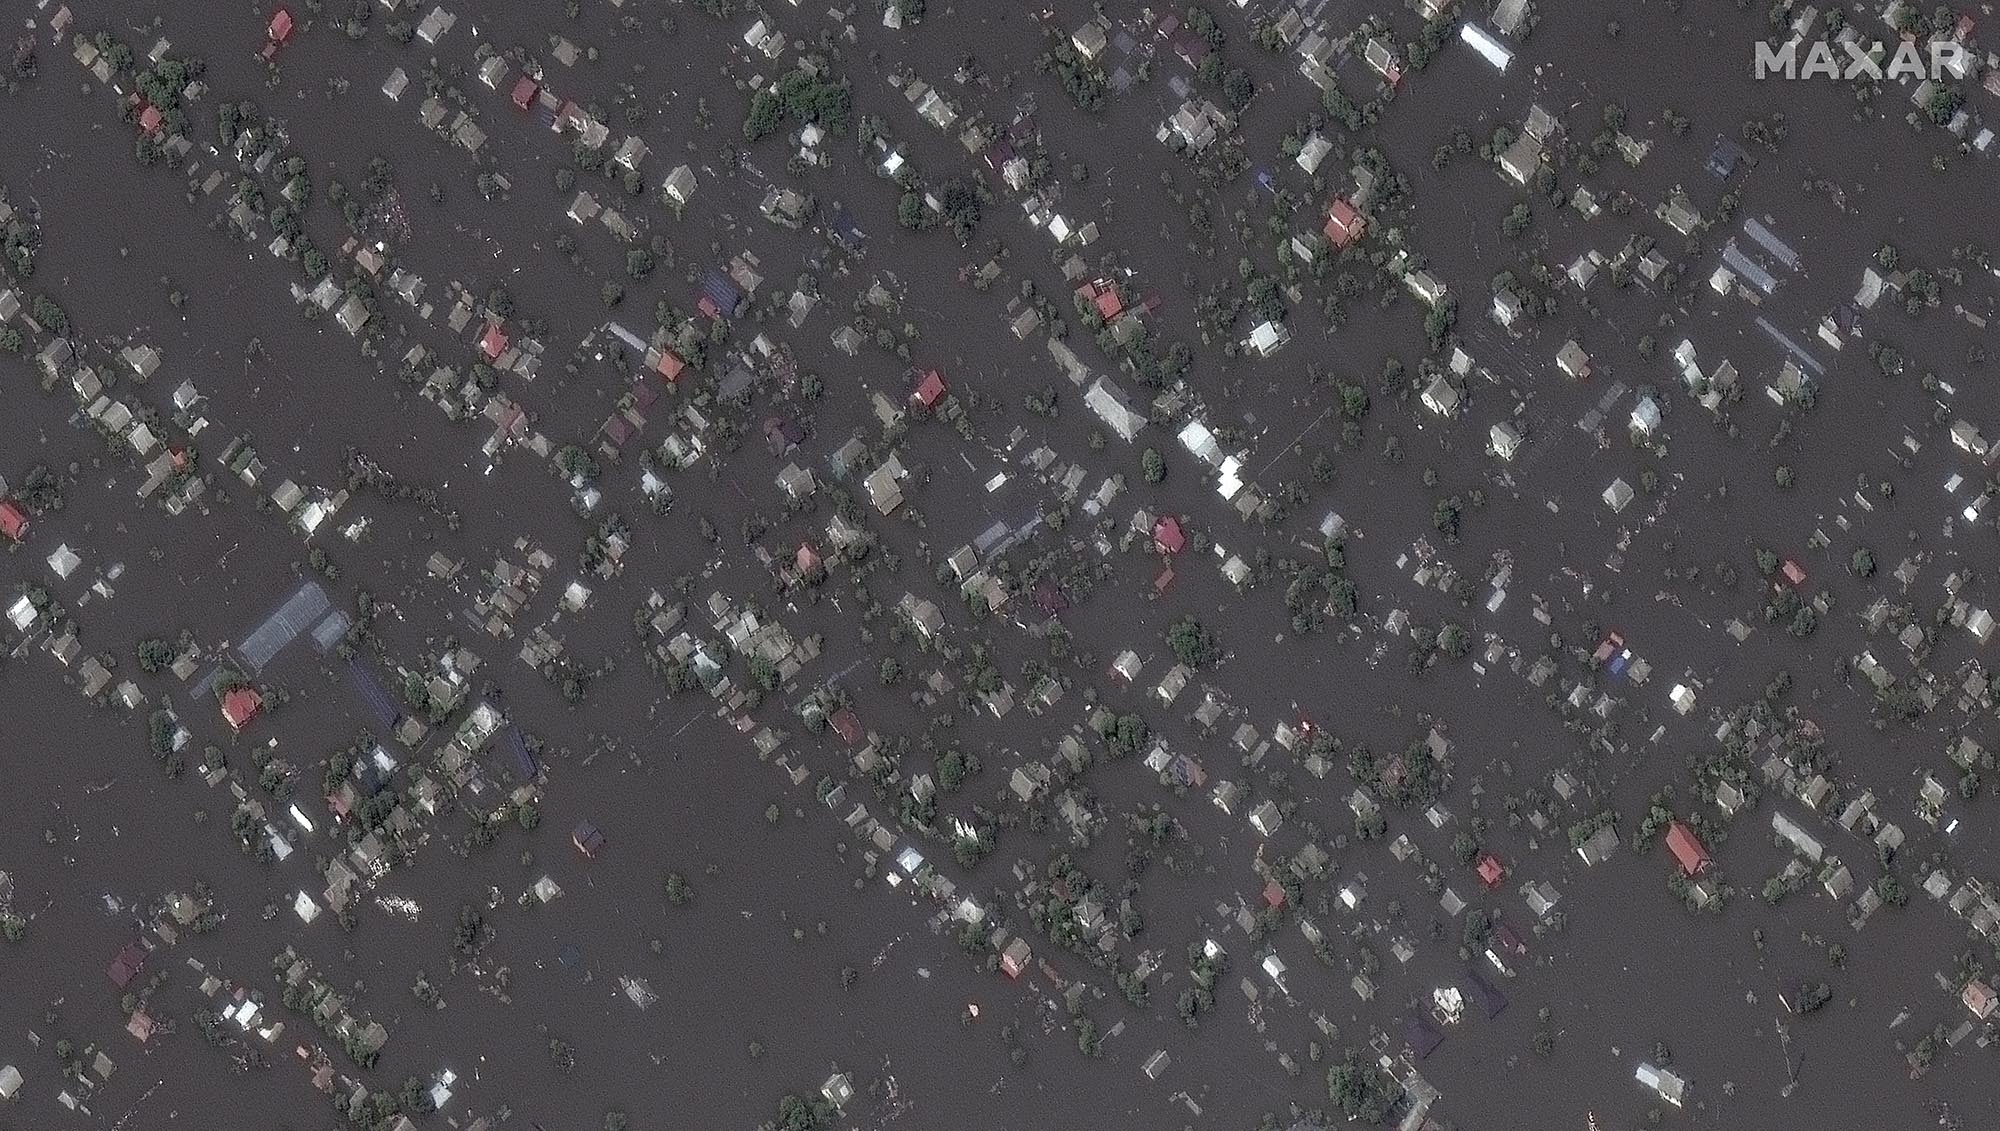 Satellite image shows Oleshky, Ukraine, after flooding, on June 7.